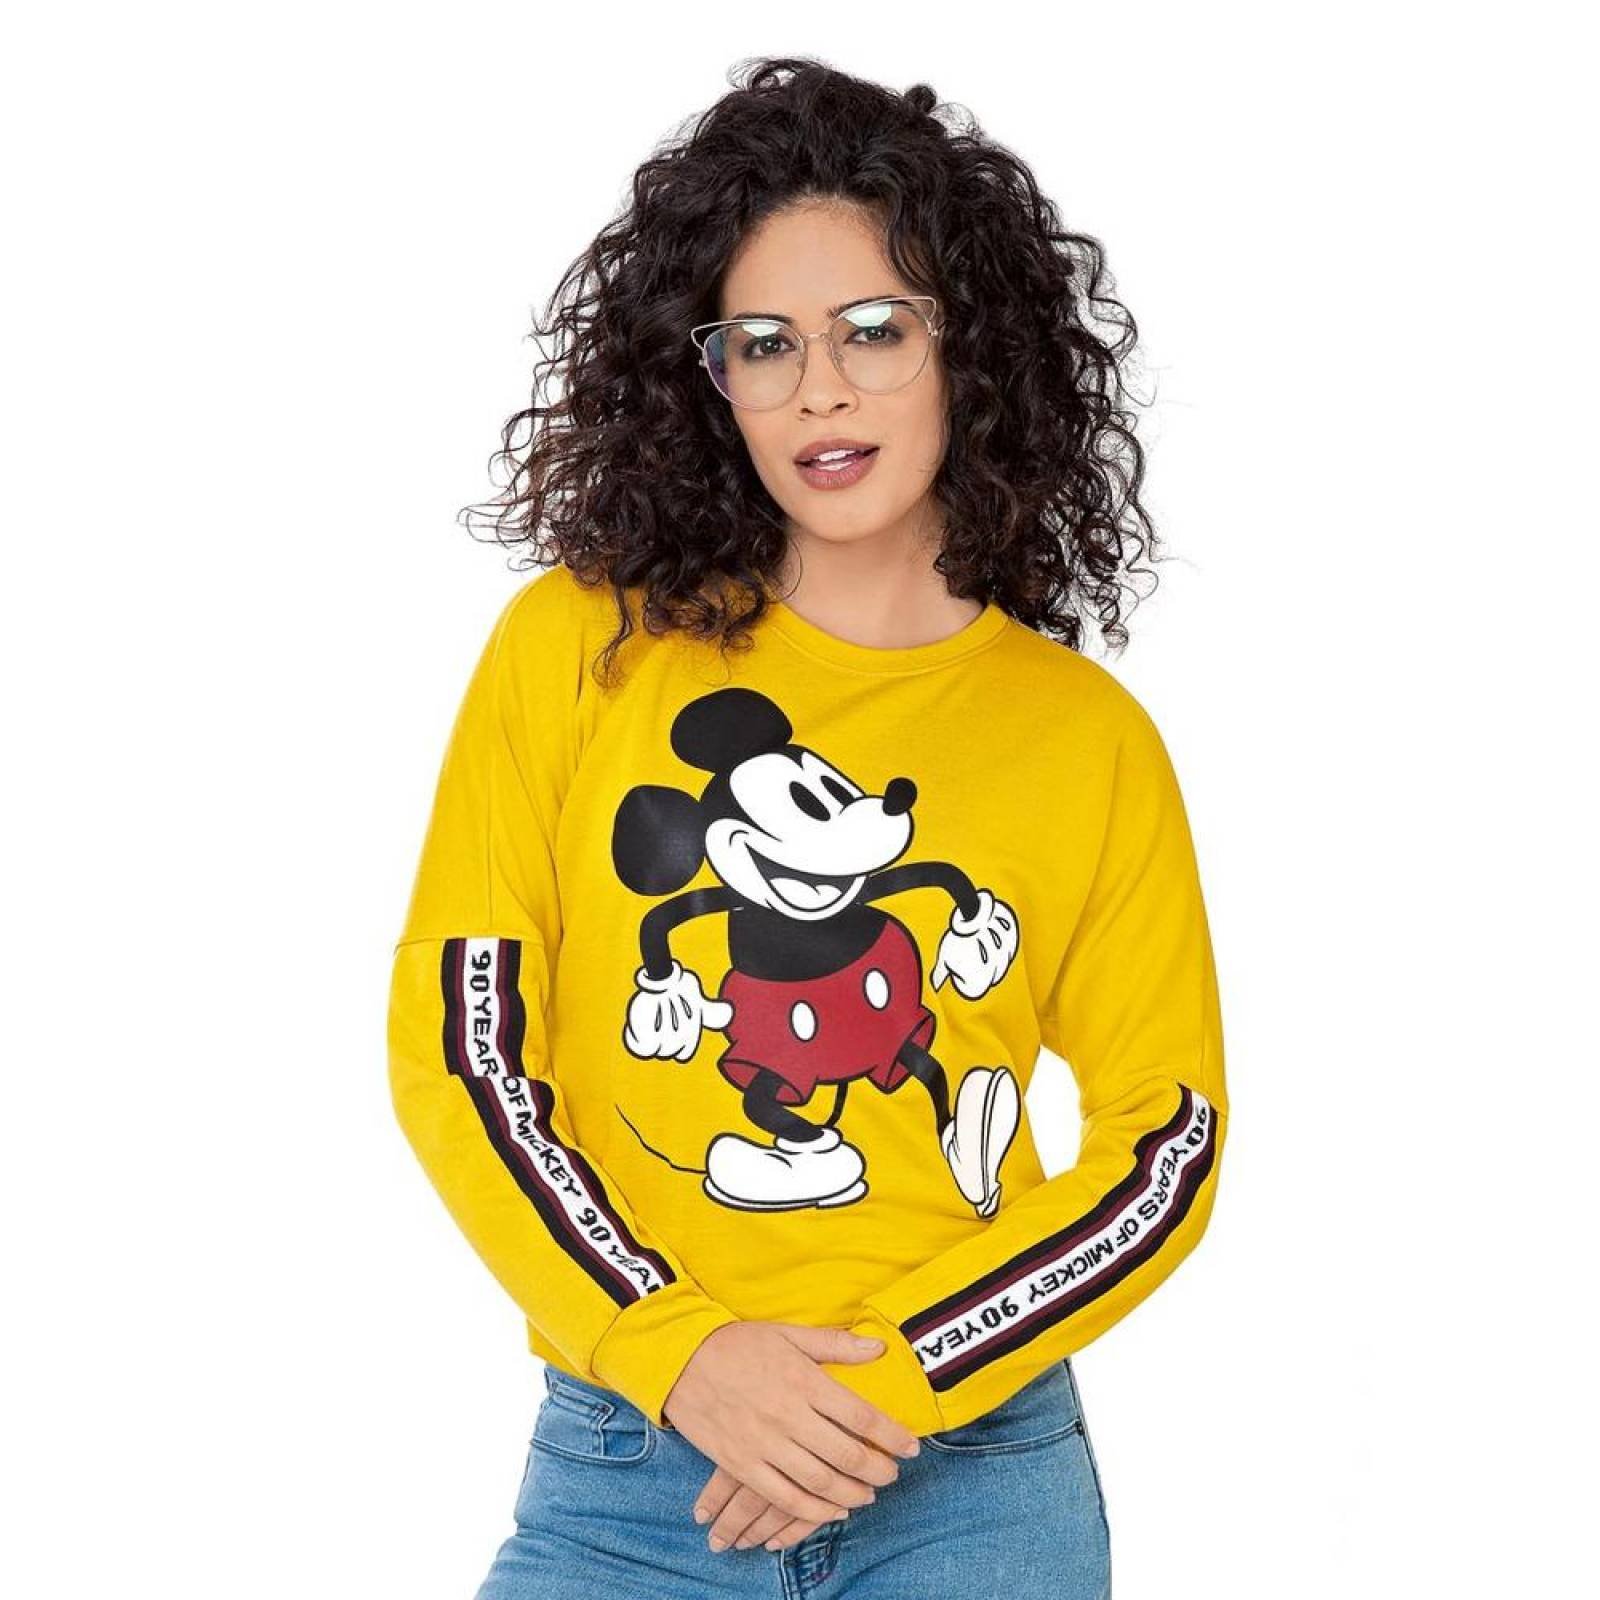 Sudadera Disney Mujer Amarillo Algodon/Poliester Ddach0283 